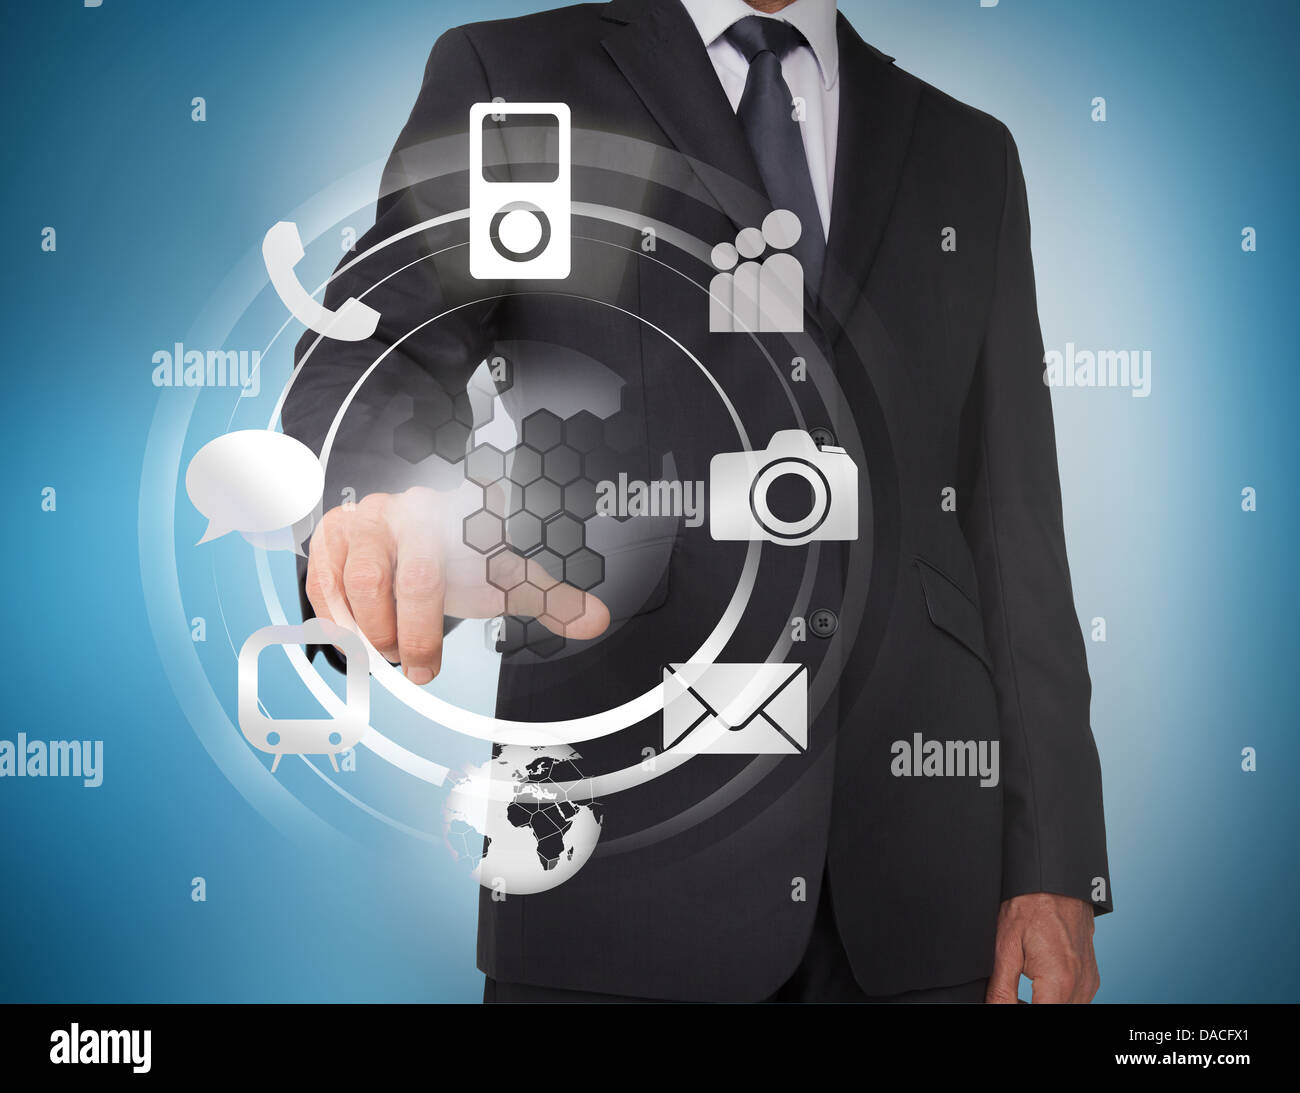 Businessman selecting icons sur un hologramme Banque D'Images